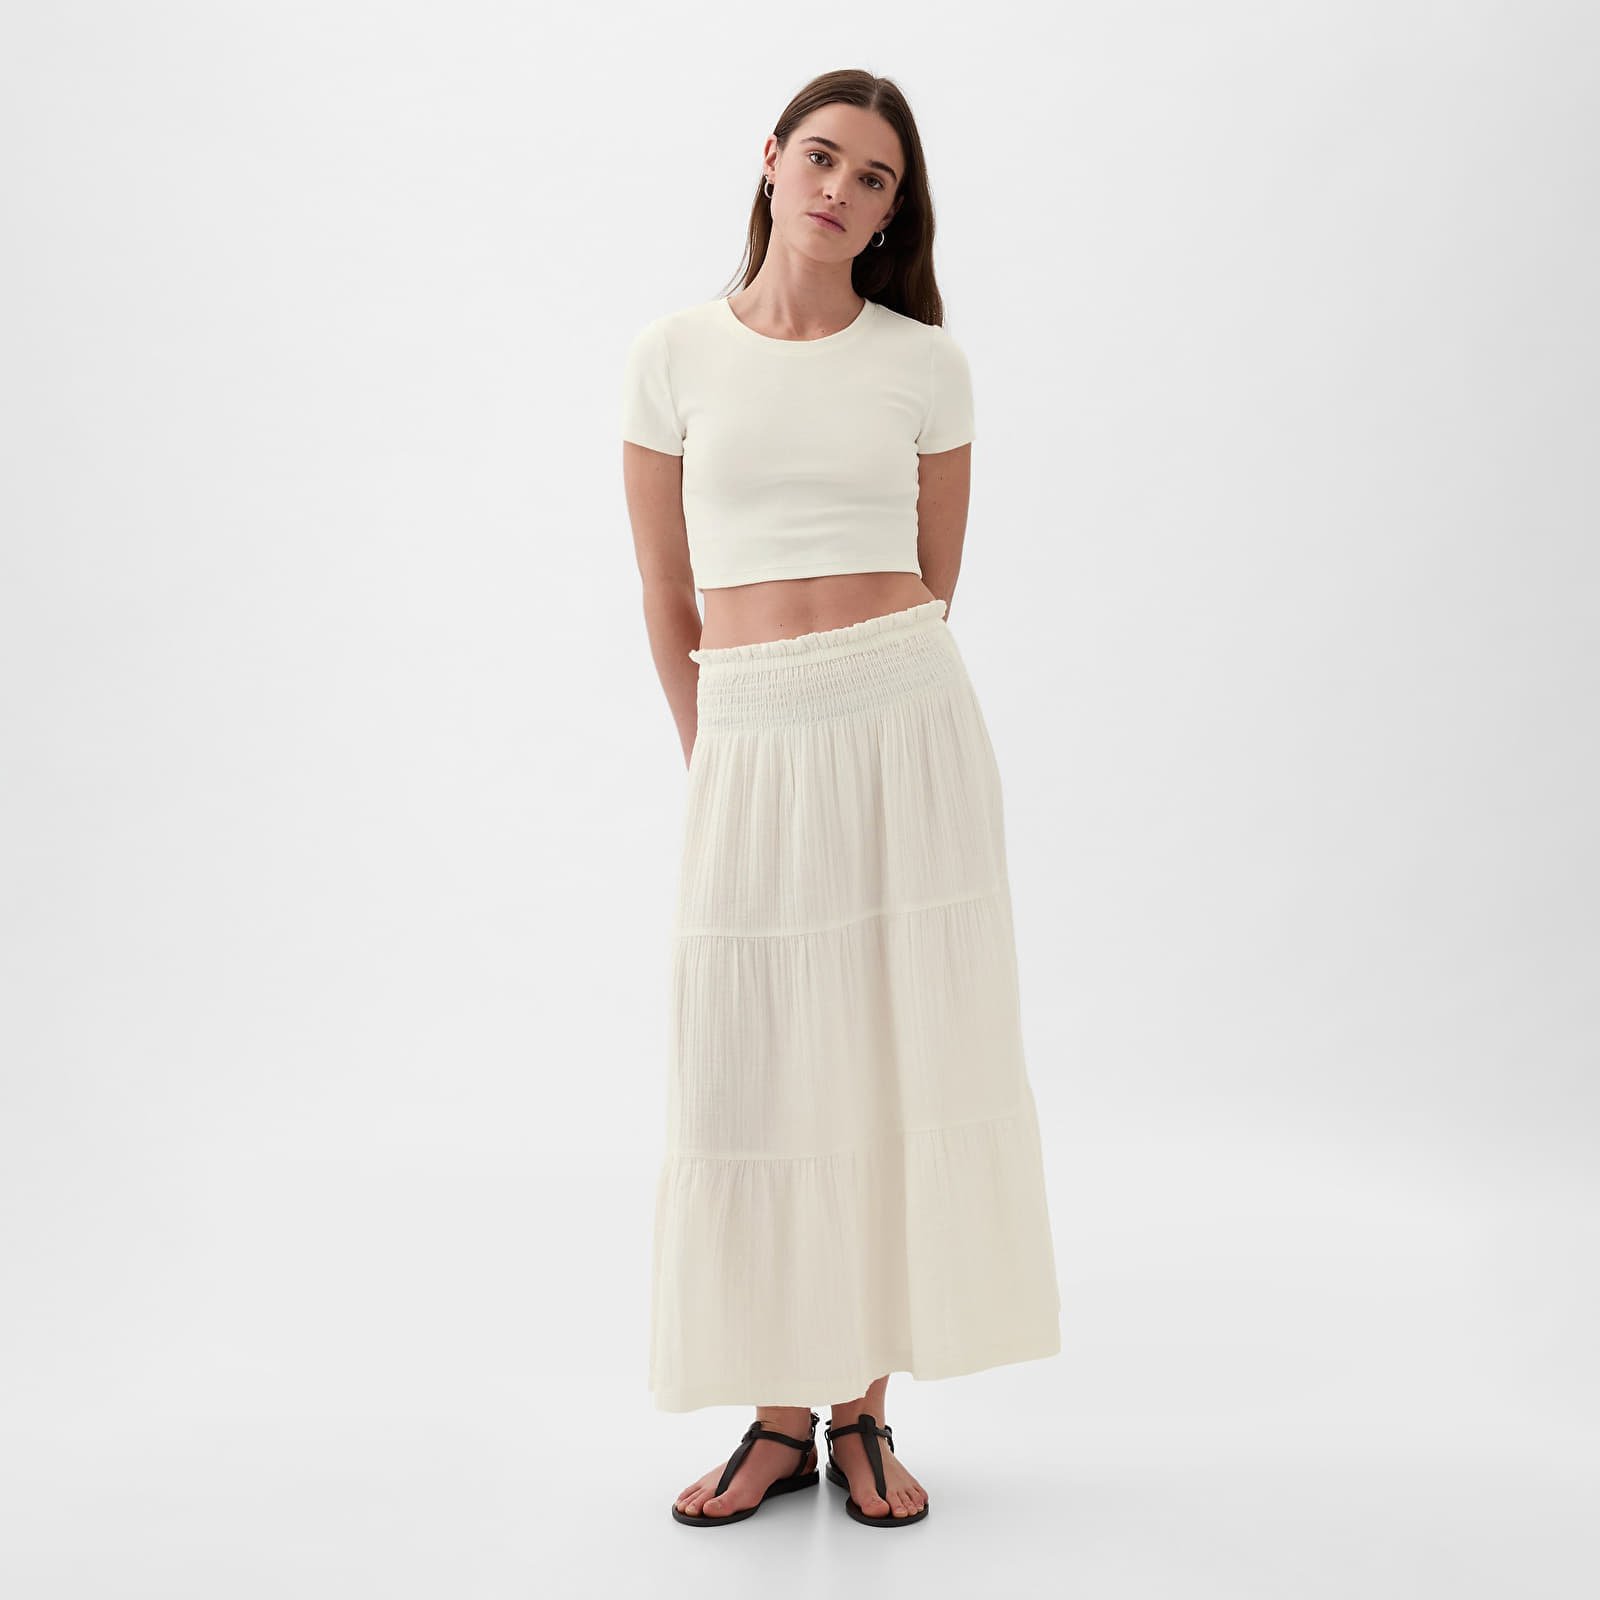 Skirt Pull On Gauze Maxi Skirt New Off White